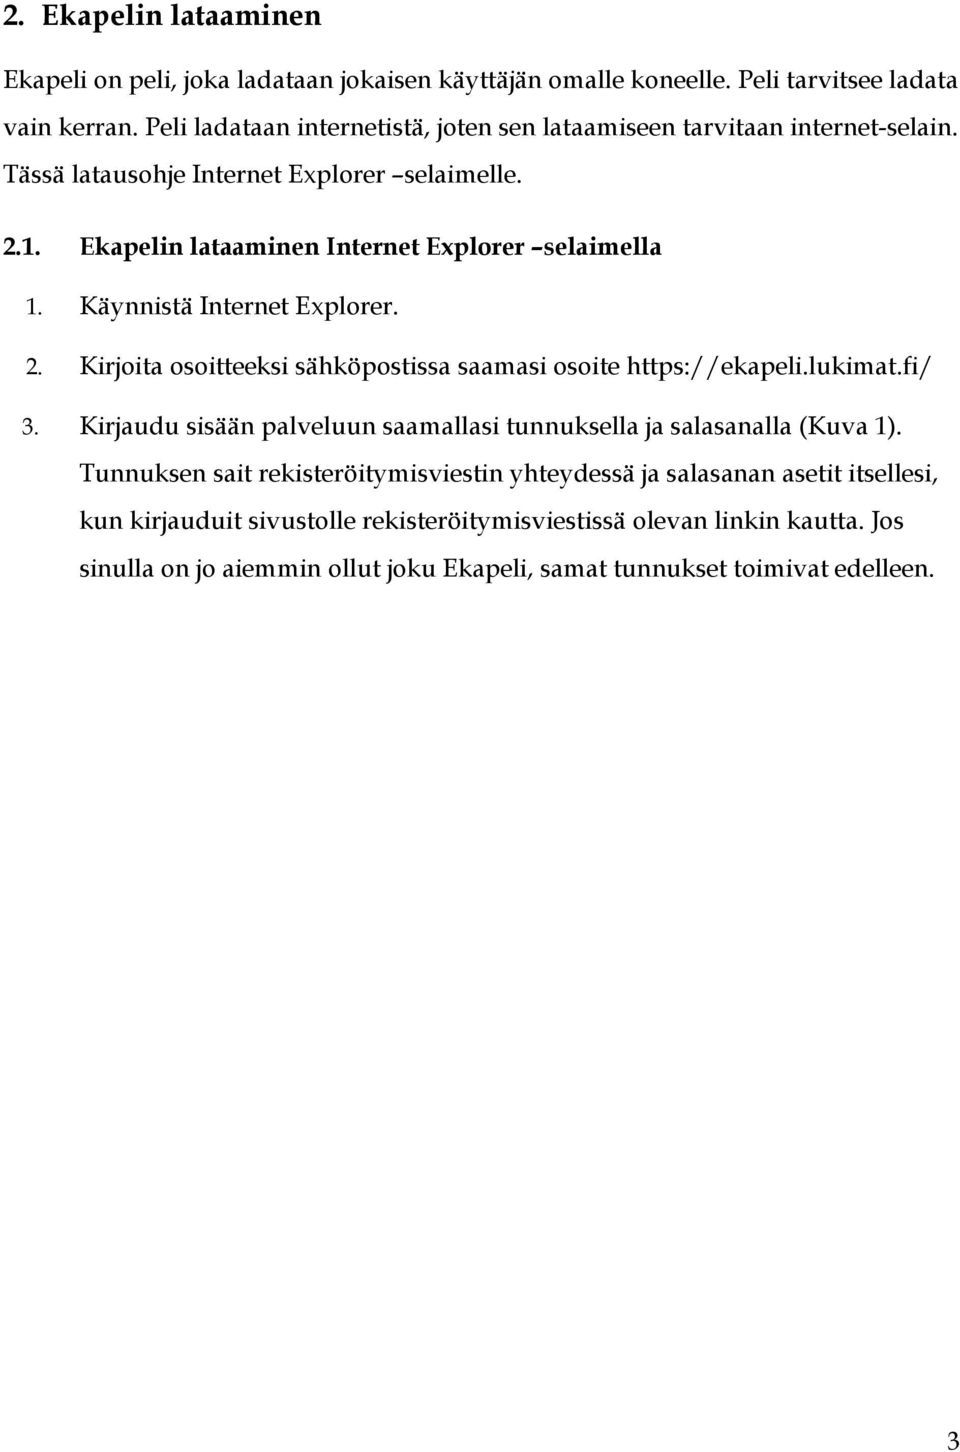 Käynnistä Internet Explorer. 2. Kirjoita osoitteeksi sähköpostissa saamasi osoite https://ekapeli.lukimat.fi/ 3.